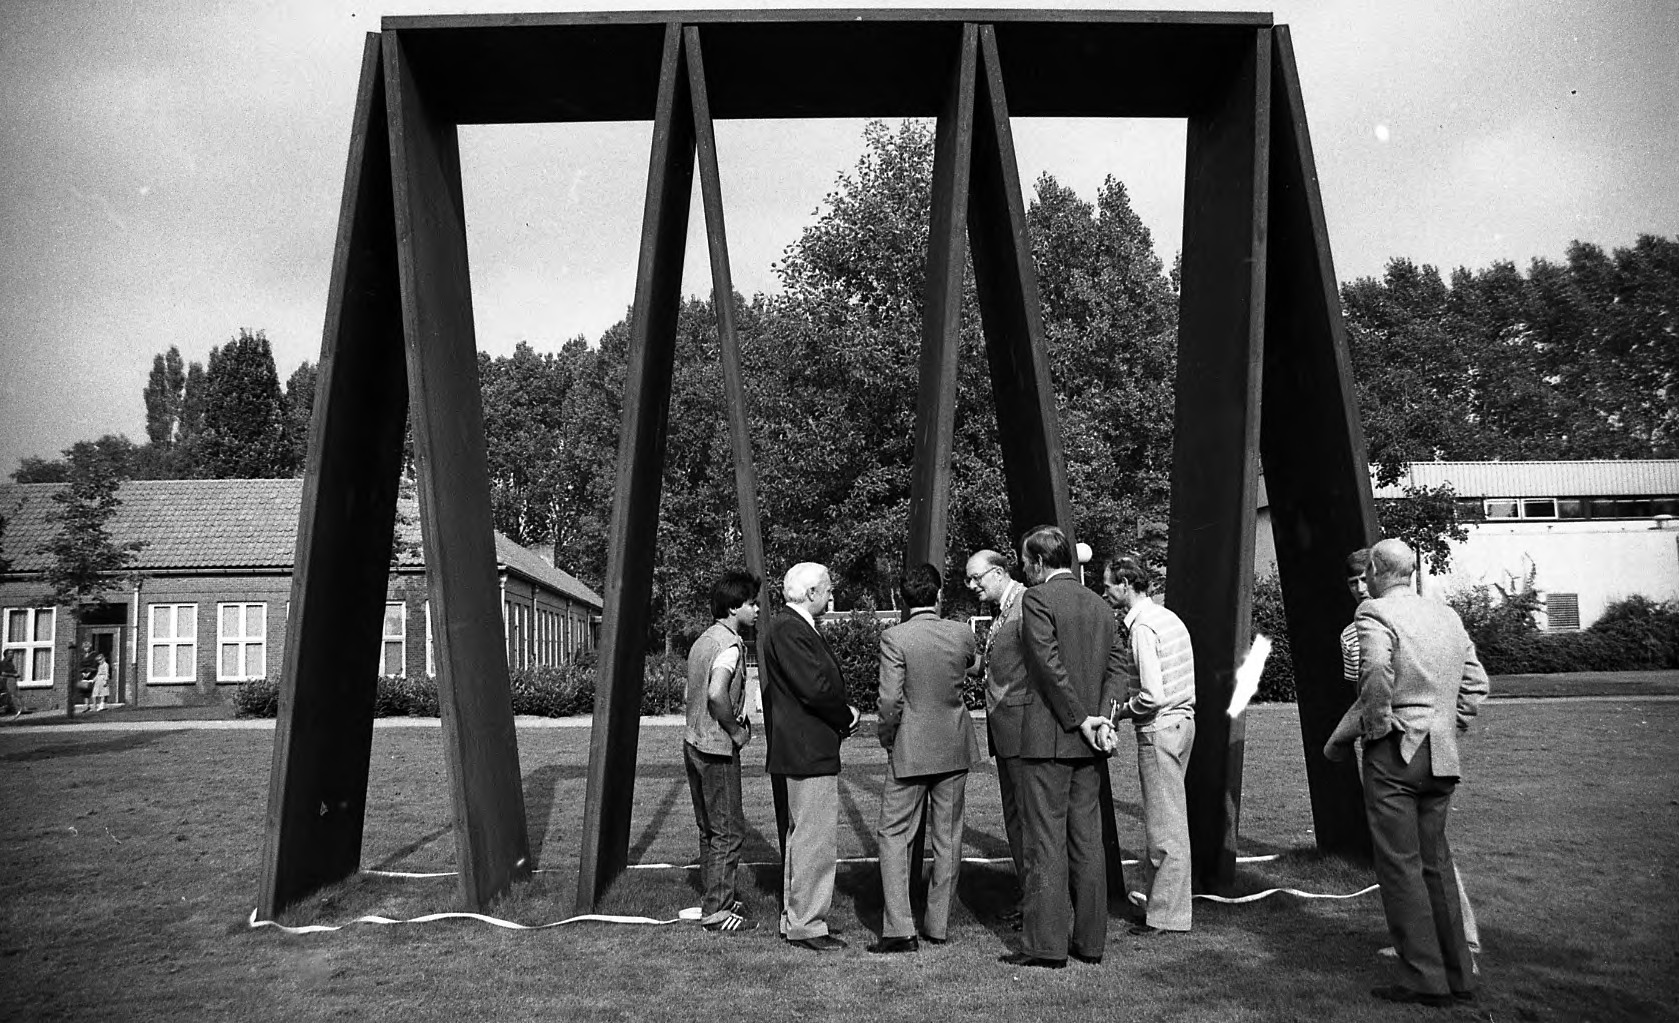 Burgemeester Paul Pesch van Boxtel met een aantal mannen bij een kunstwerk. Weet iemand meer? (foto: Mies den Otter, collectie BHIC: 1914-008593)